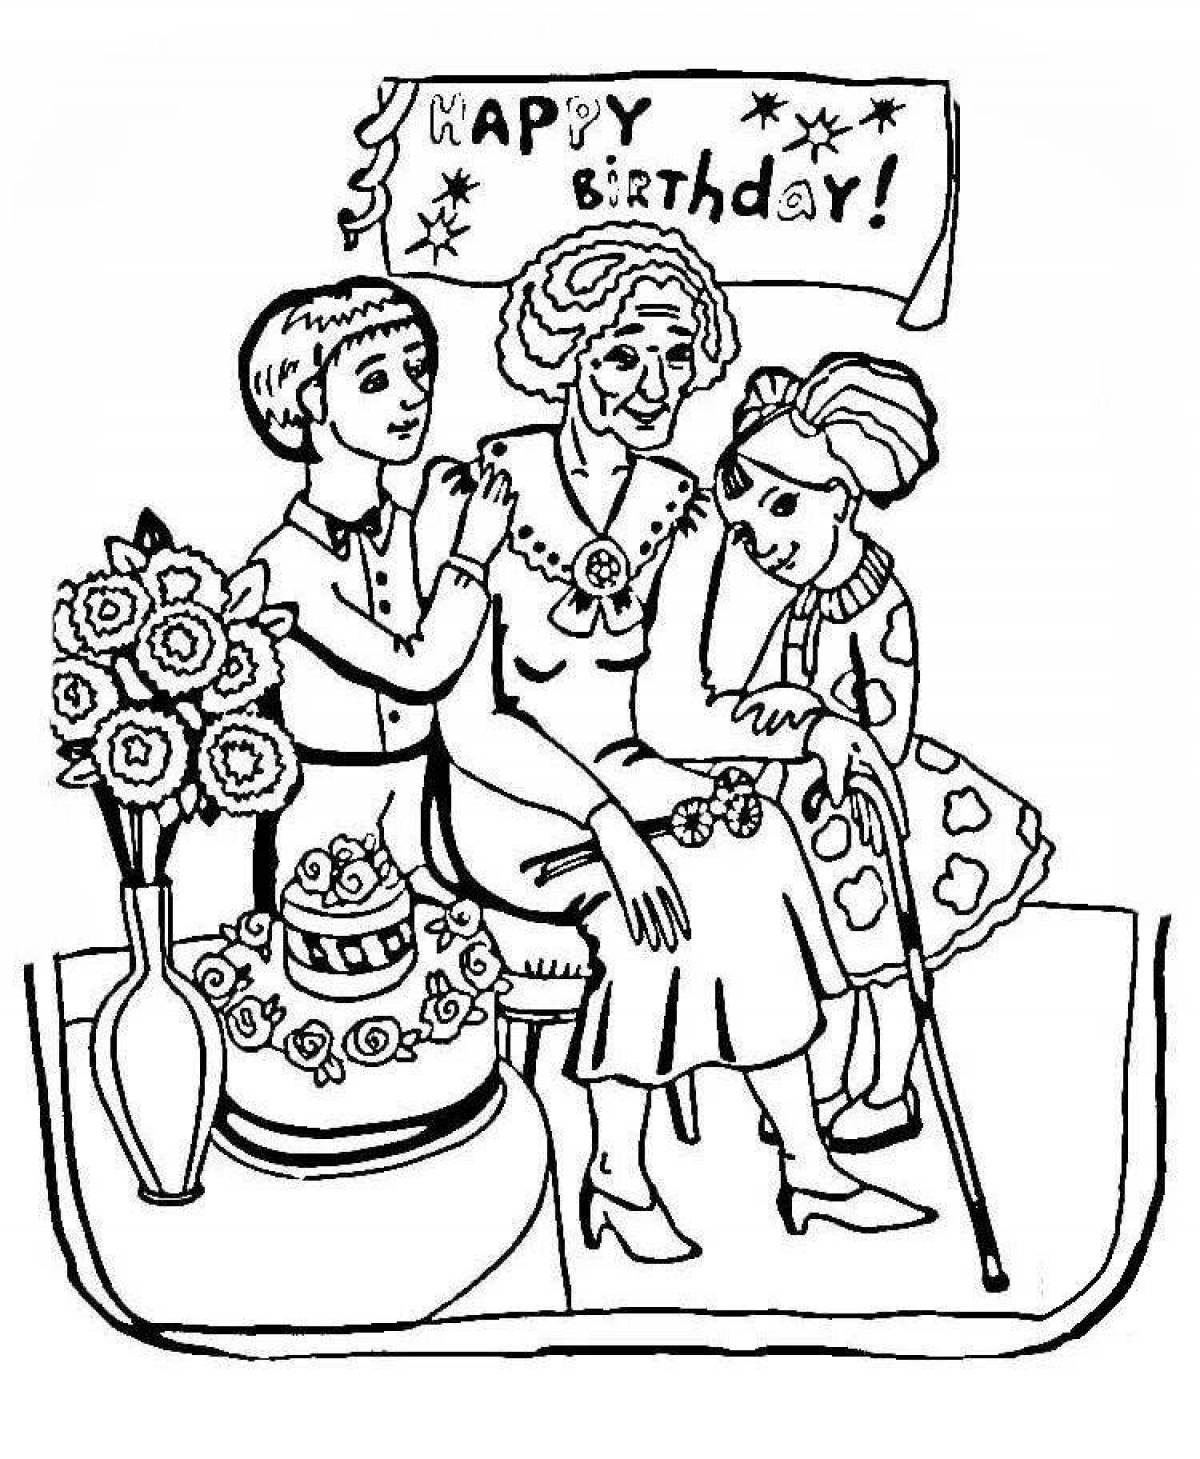 Раскраска день рождения превознесенной бабушки